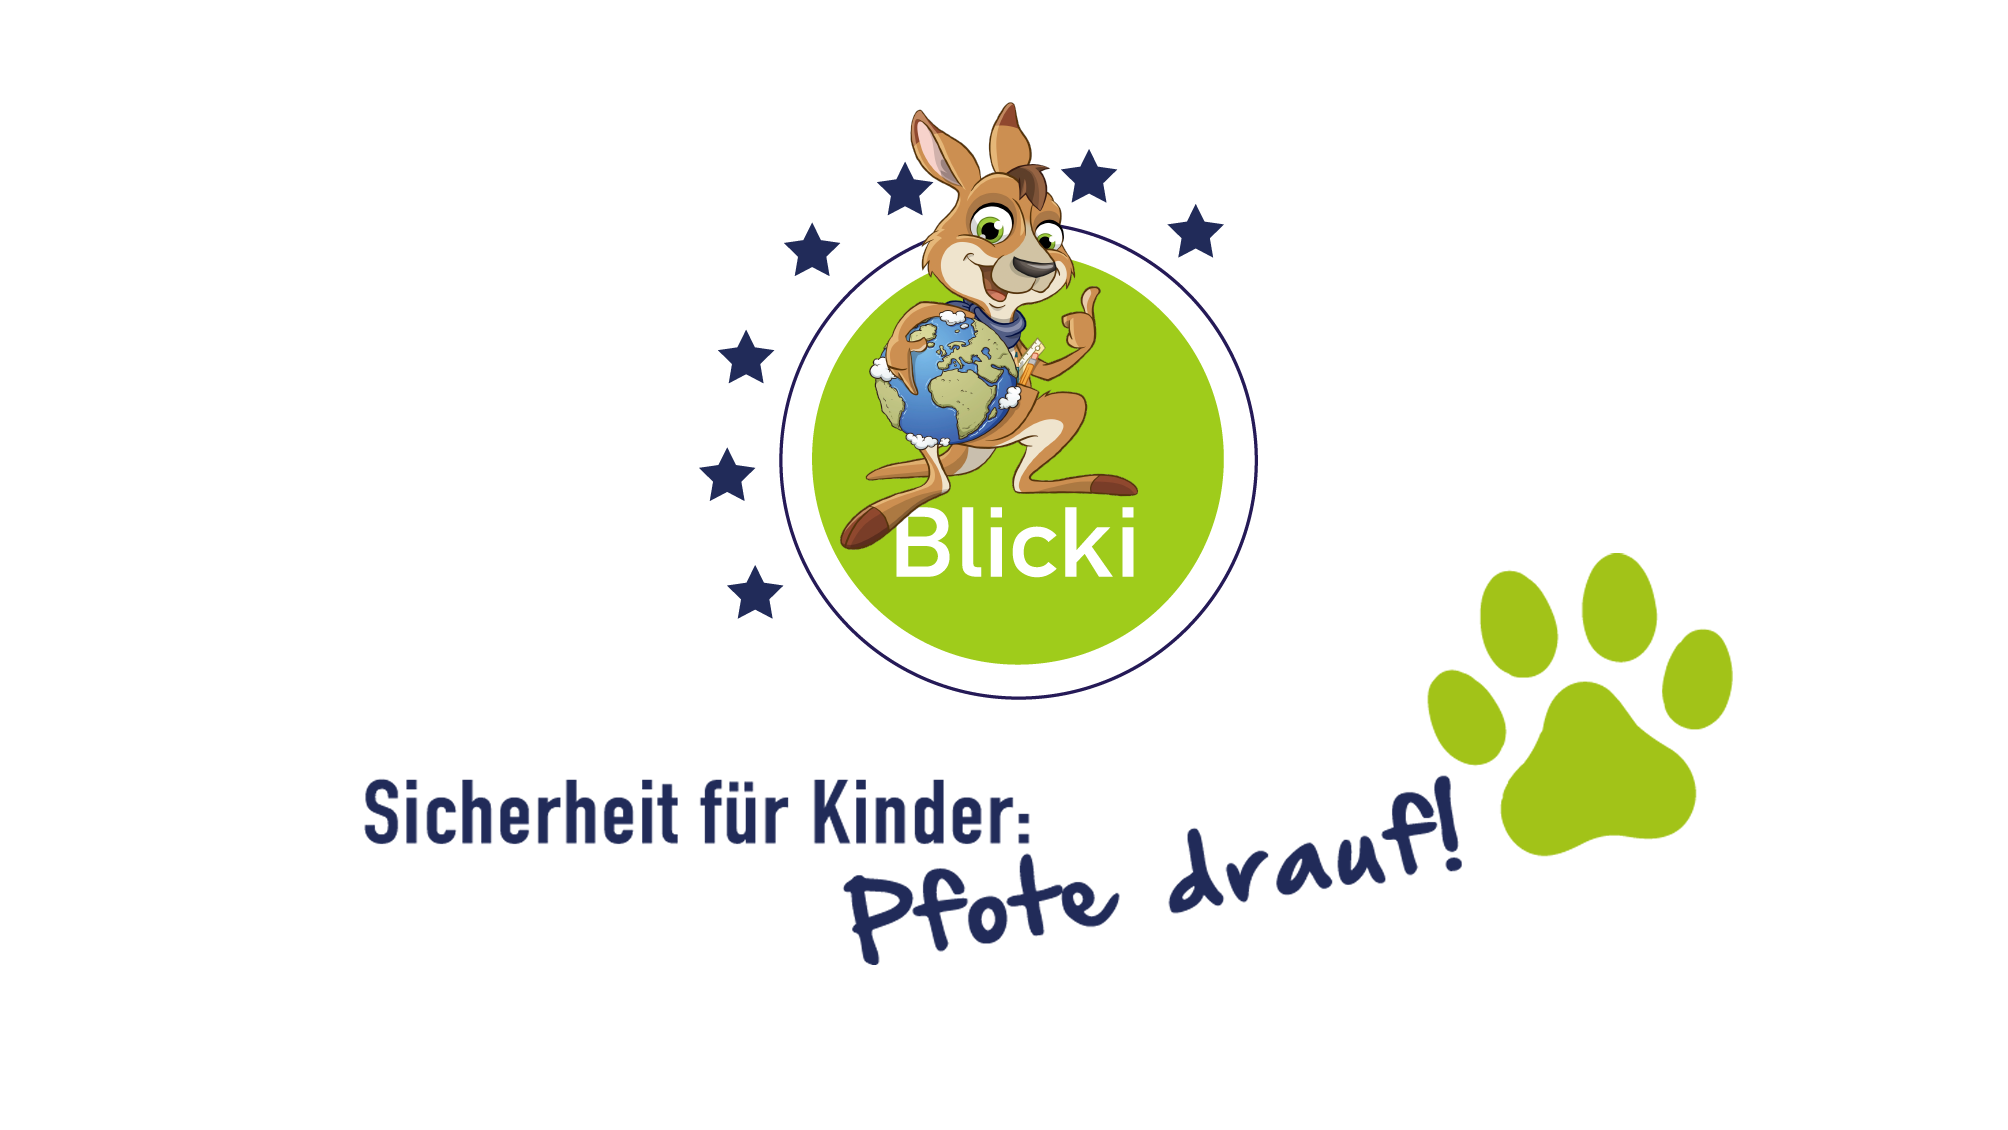 Blicki blickt's Logo